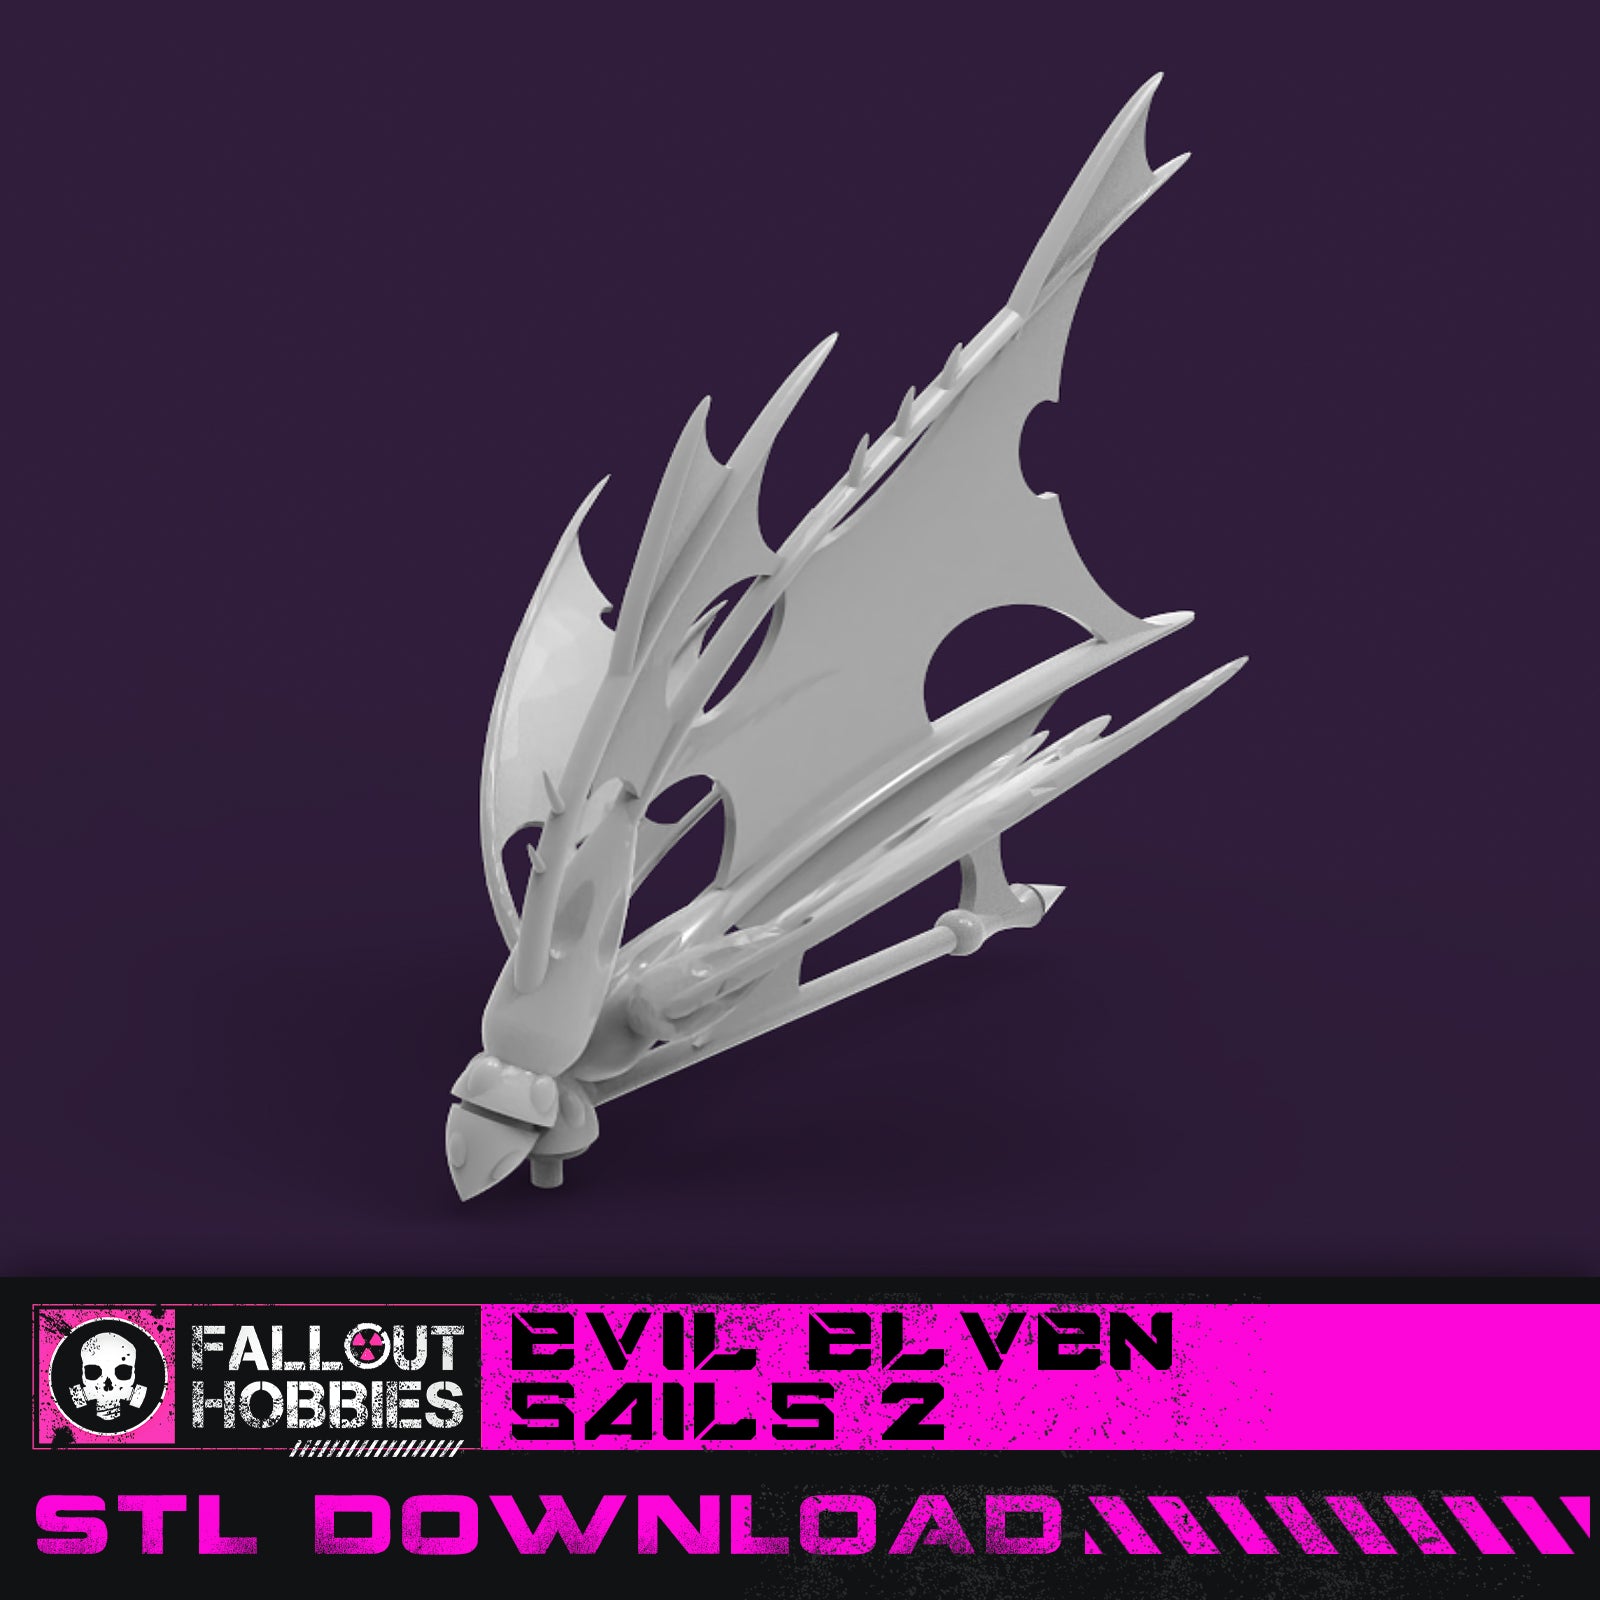 Evil Elven Bundle  STL File Download